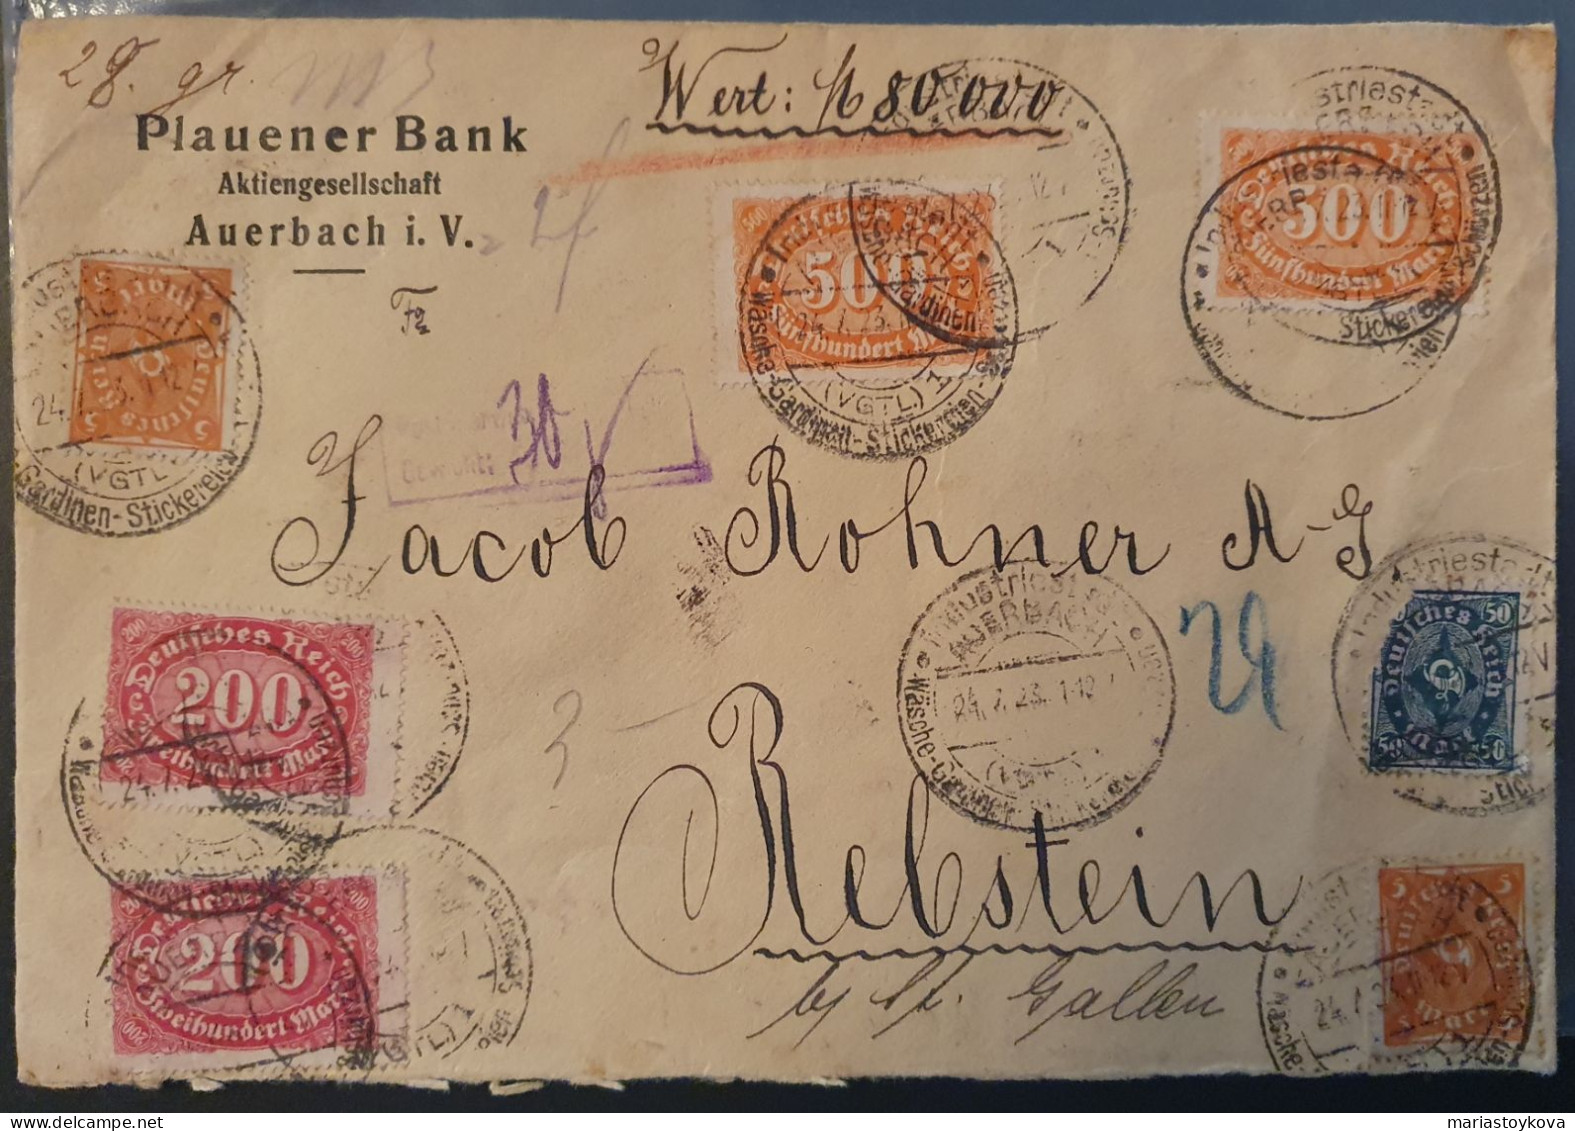 1923. Wertbrief 80.000 DM, Plauener Bank Auerbach I. V. Wachssiegel, Rebstein St. Gallen, Reichsfinanzverwaltung - Covers